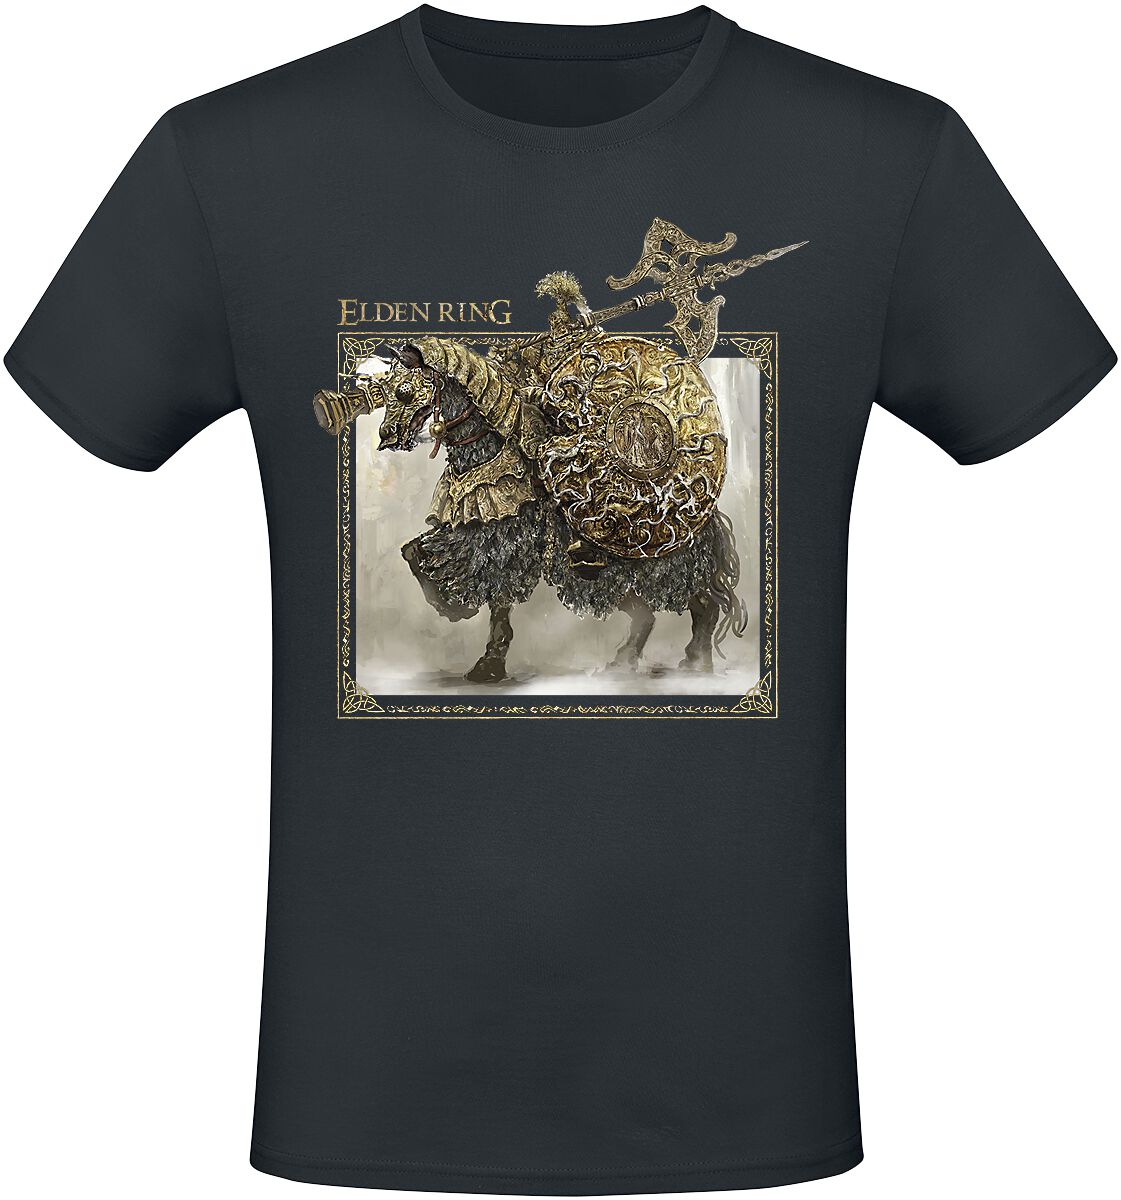 Elden Ring - Gaming T-Shirt - Tree Sentinel - S bis XXL - für Männer - Größe L - schwarz  - EMP exklusives Merchandise!